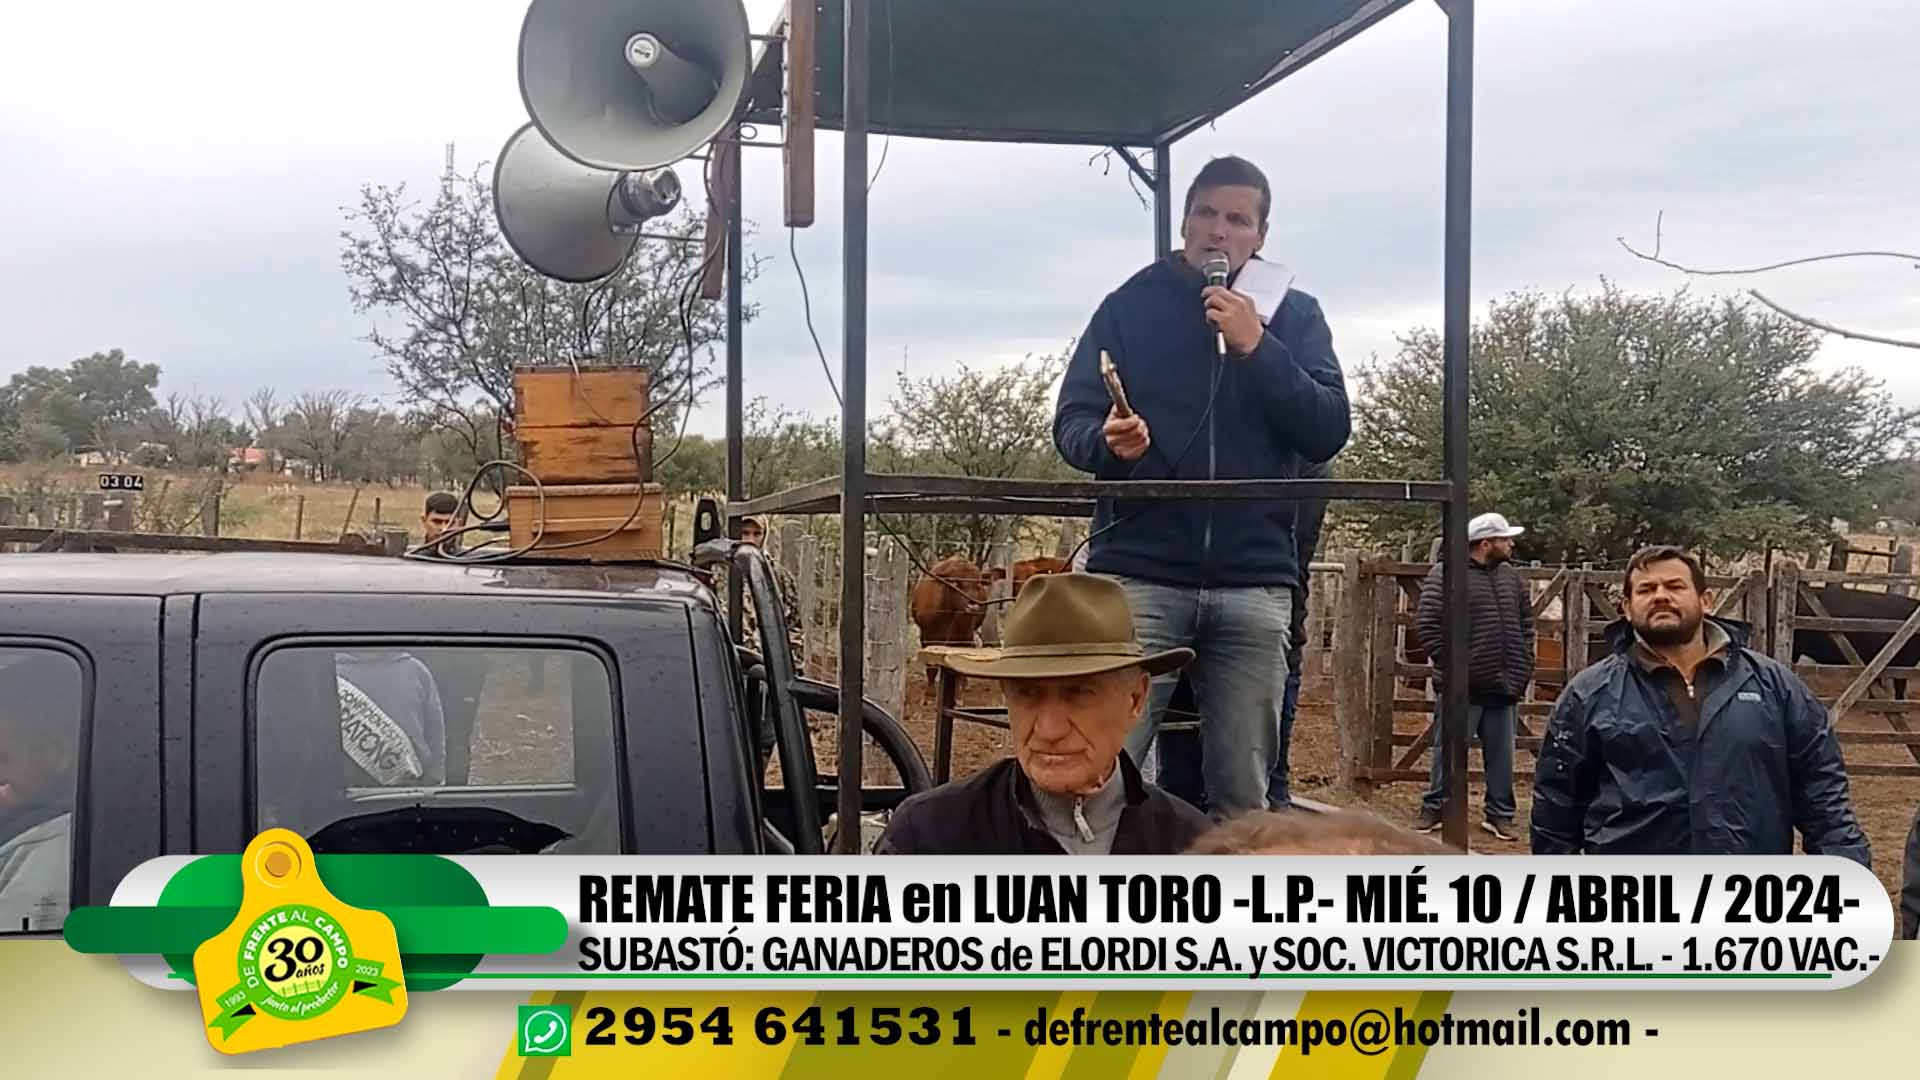 Remate Feria de Ganaderos de Elordi S.A. y Sociedad Victorica S.R.L. – Luan Toro -L.P.- | 10-04-2024